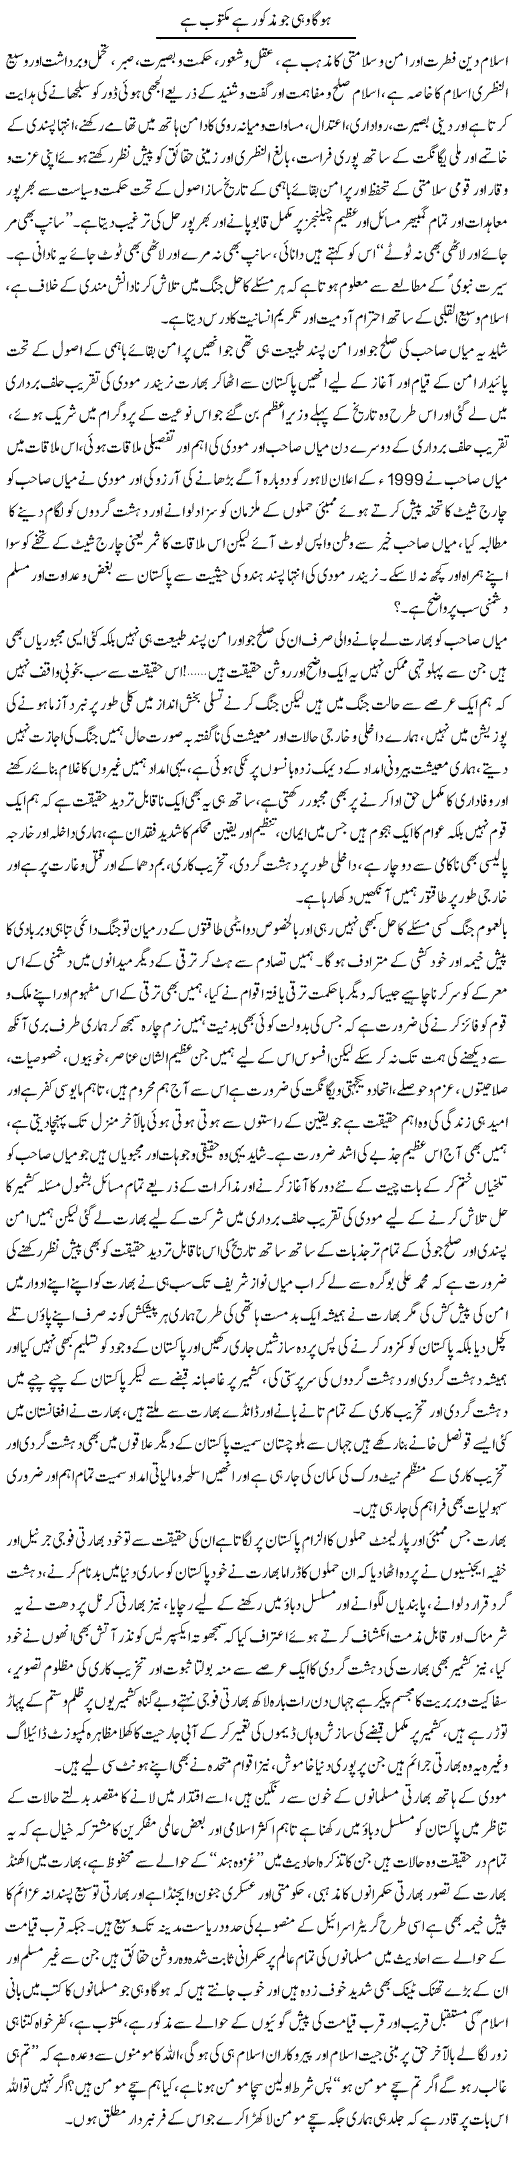 Hoga Wahi Jo Kitab Main Maktub Hai | Dr. Muhammad Tayyab Khan Singhanvi | Daily Urdu Columns